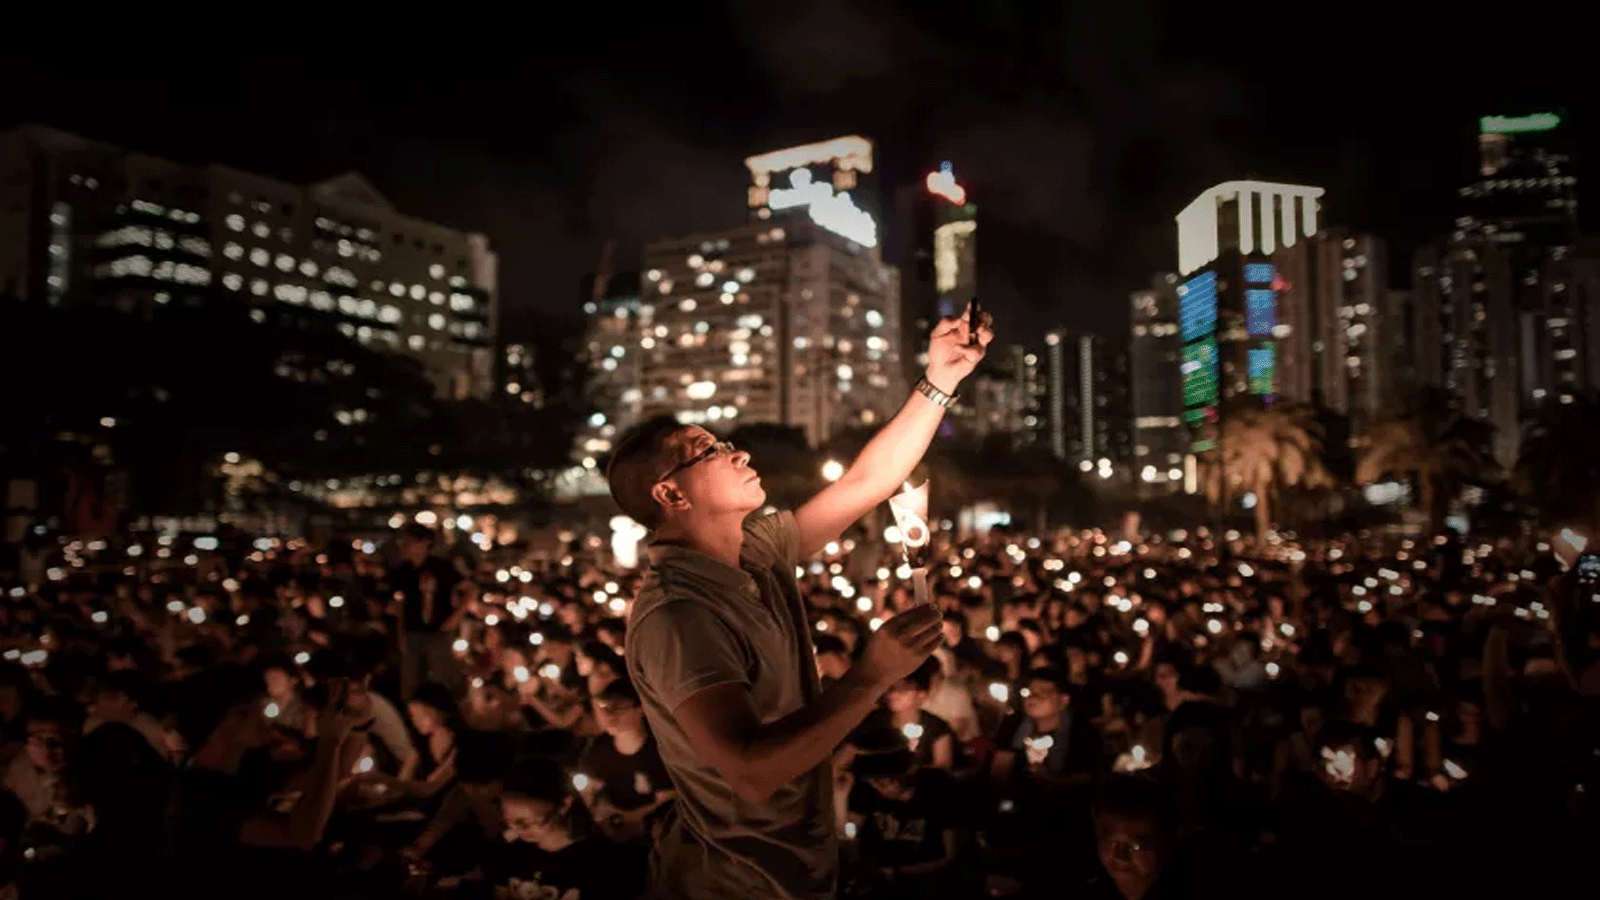 رجلٌ يلتقط صورة بهاتفه بينما يحمل آخرون الشموع في وقفة احتجاجية في هونغ كونغ لإحياء الذكرى الخامسة والعشرين لـ